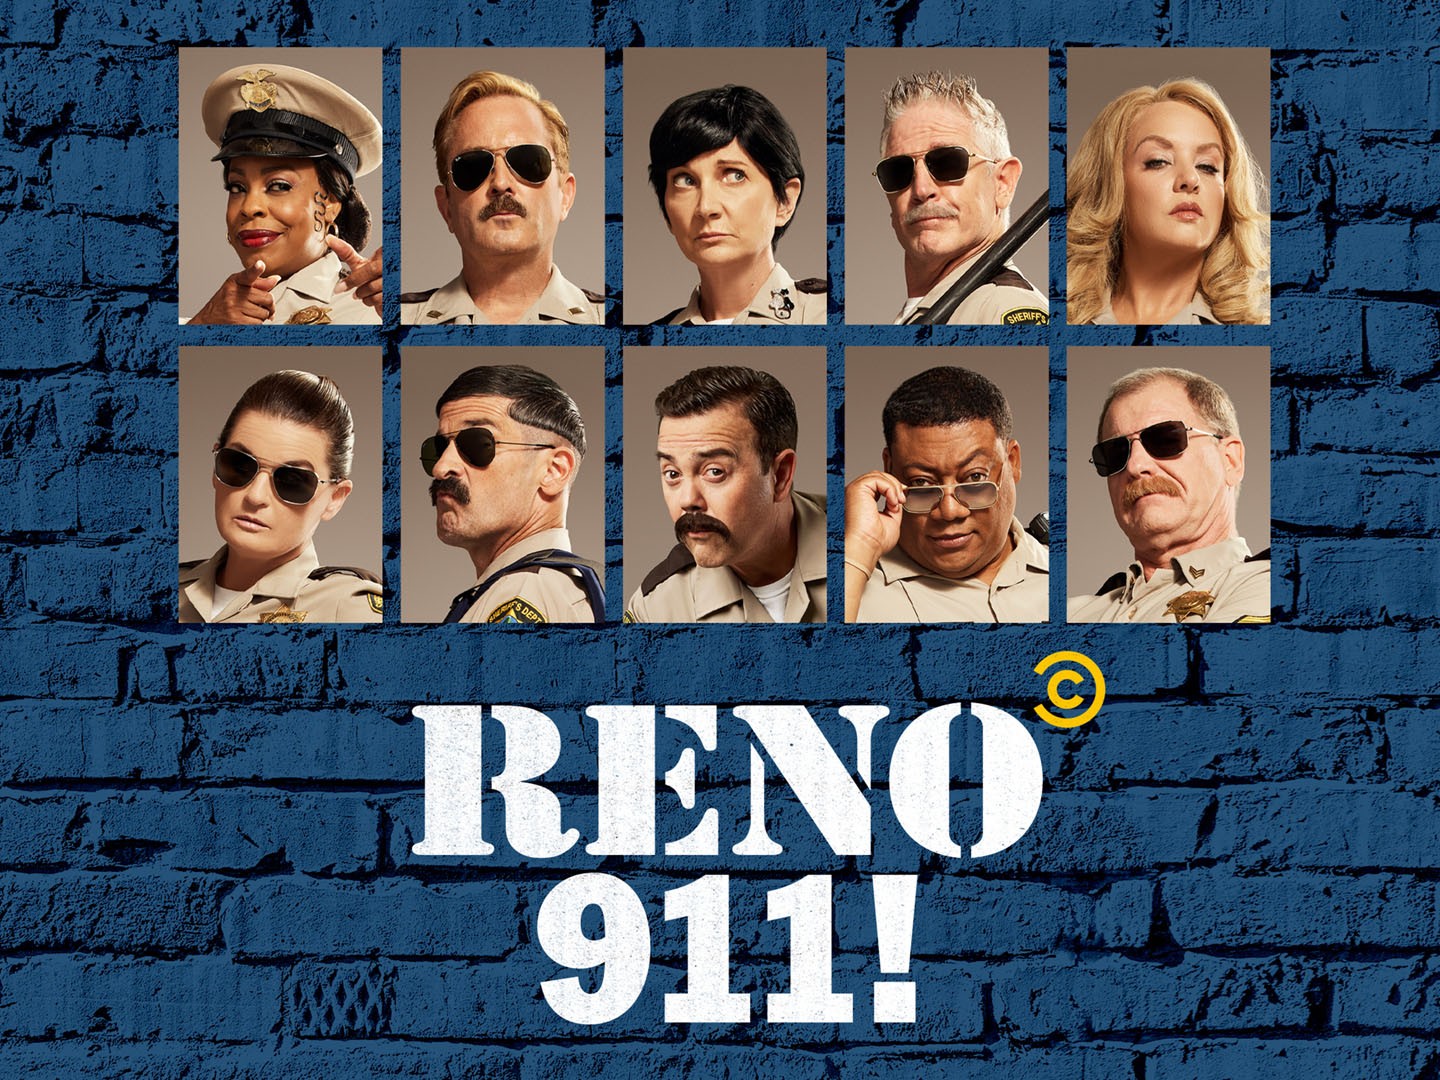 Reno 911!': 2ª temporada do revival ganha trailer HILÁRIO; Confira! -  CinePOP